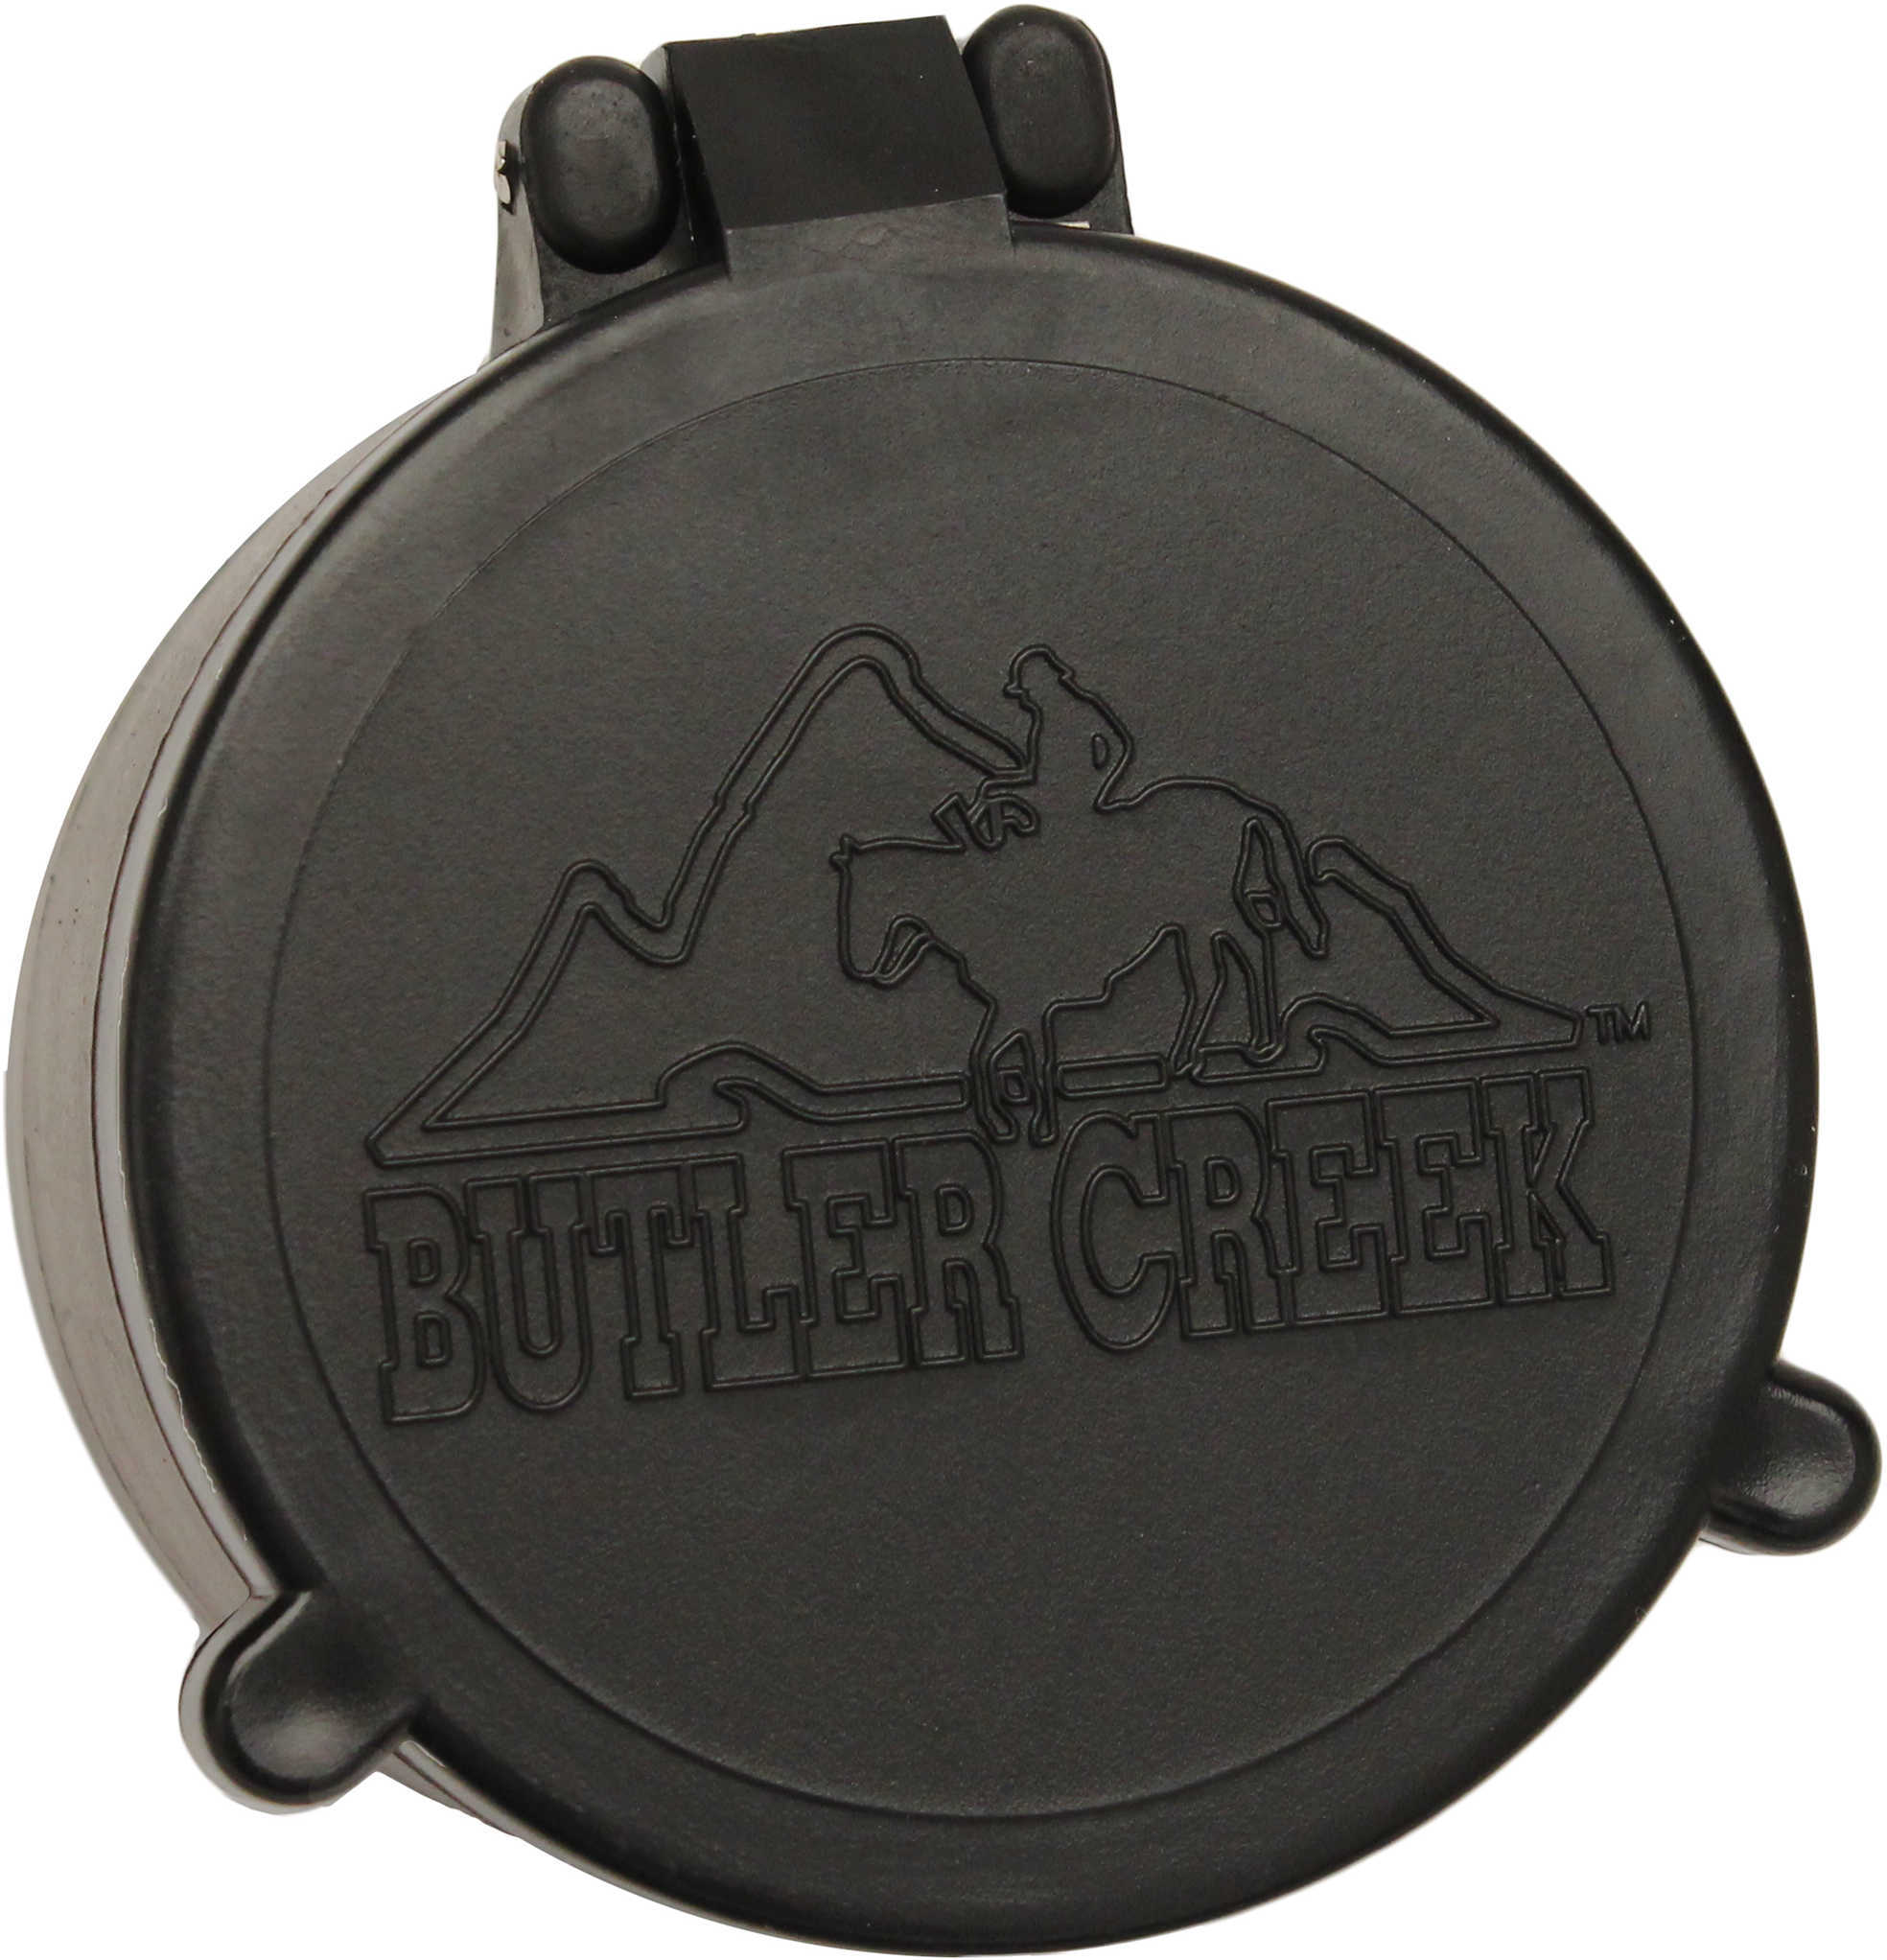 Butler Creek 30070 Flip-Open Scope Cover Objective Lens 36.30mm Slip On Polymer Black